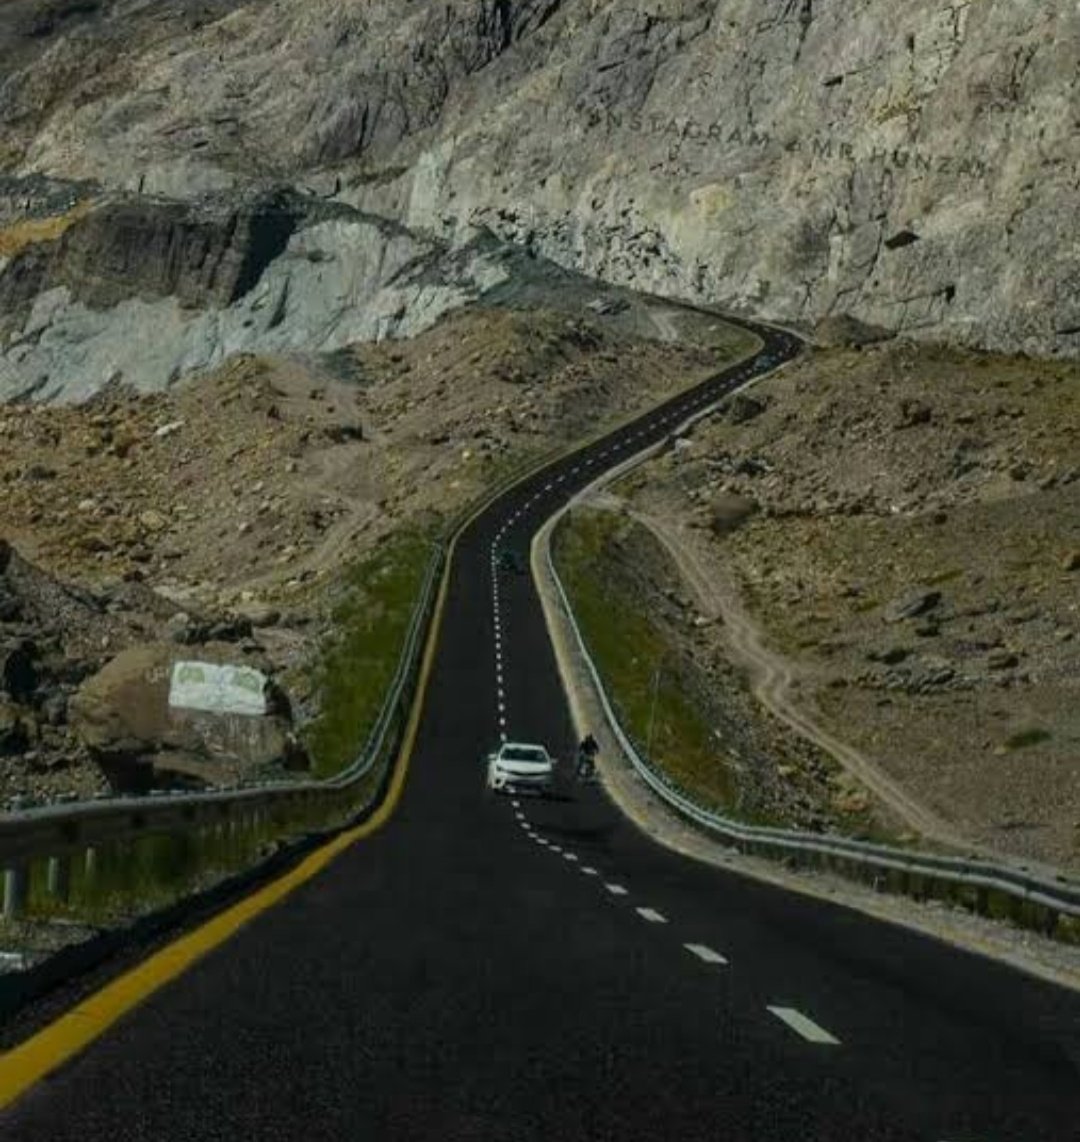 भारत के लिए गिलगित क्षेत्र कश्मीर से भी ज्यादा आवश्यक क्यों है?• चीन ने काराकोरम की पहाड़ियों को चीर कर CPEC के लिए रास्ते बना लिए हैं, जिसे रोकना अत्यंत आवश्यक है• हमें यहाँ से अफगानिस्तान के द्वारा पूरे मध्य एशिया का रास्ता मिल जाएगा5/n #गिलगित_बल्टिस्तान_खाली_करो